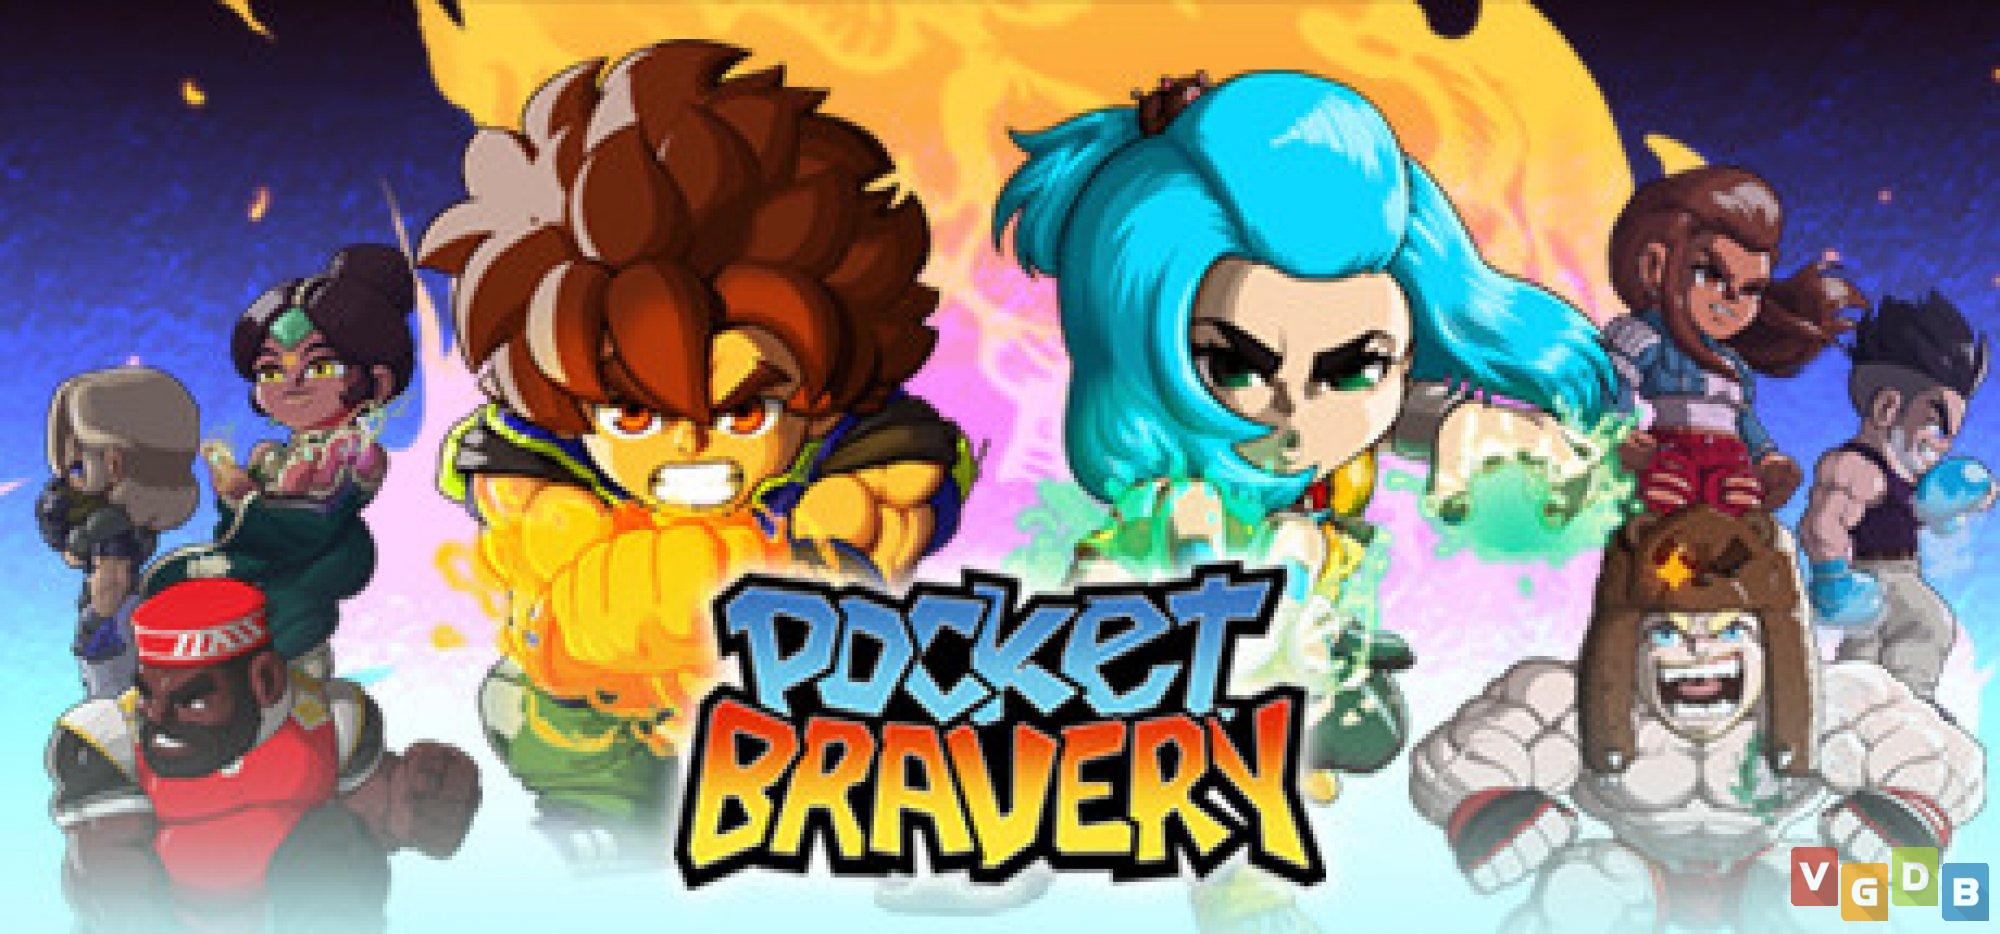 Pocket Bravery  Jogo brasileiro de luta terá crossover com